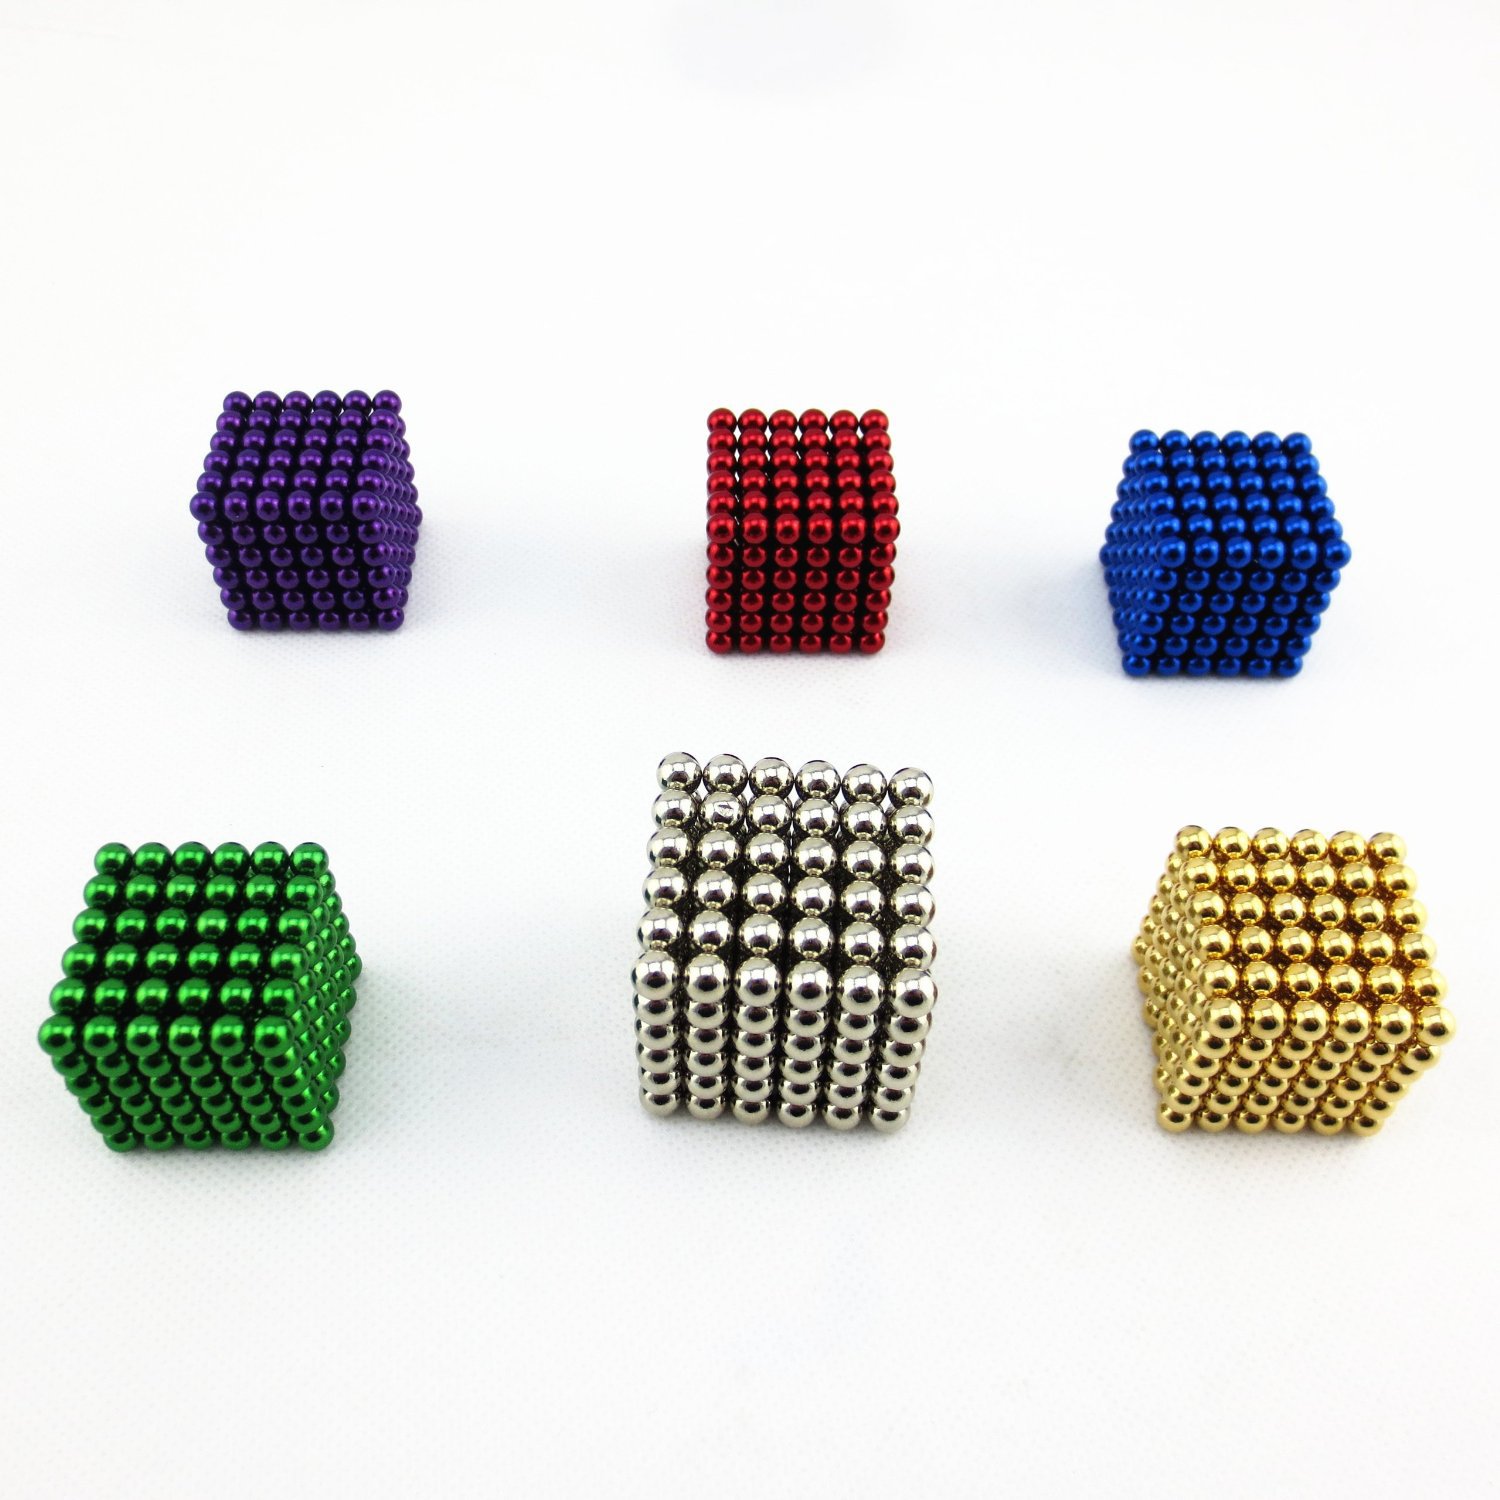 正品5mm 216颗巴克球魔力磁球磁铁益智玩具巴基磁力魔方积木彩色